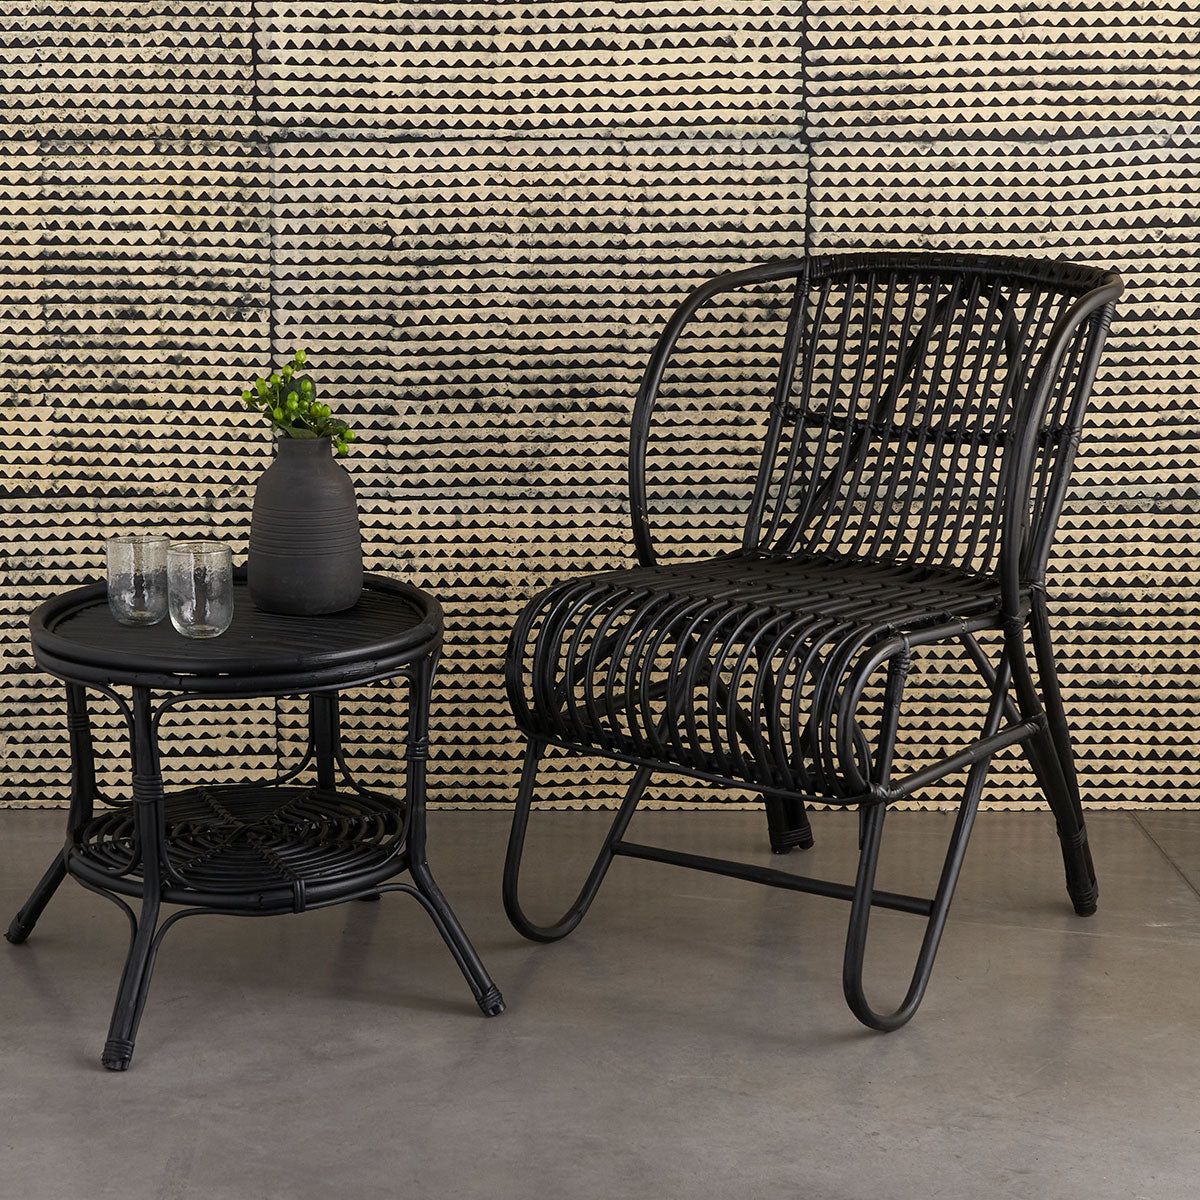 Fauteuil en forme de fleur, fauteuil fleur en rotin, fauteuil en rotin et  pieds en métal - Rotin Design